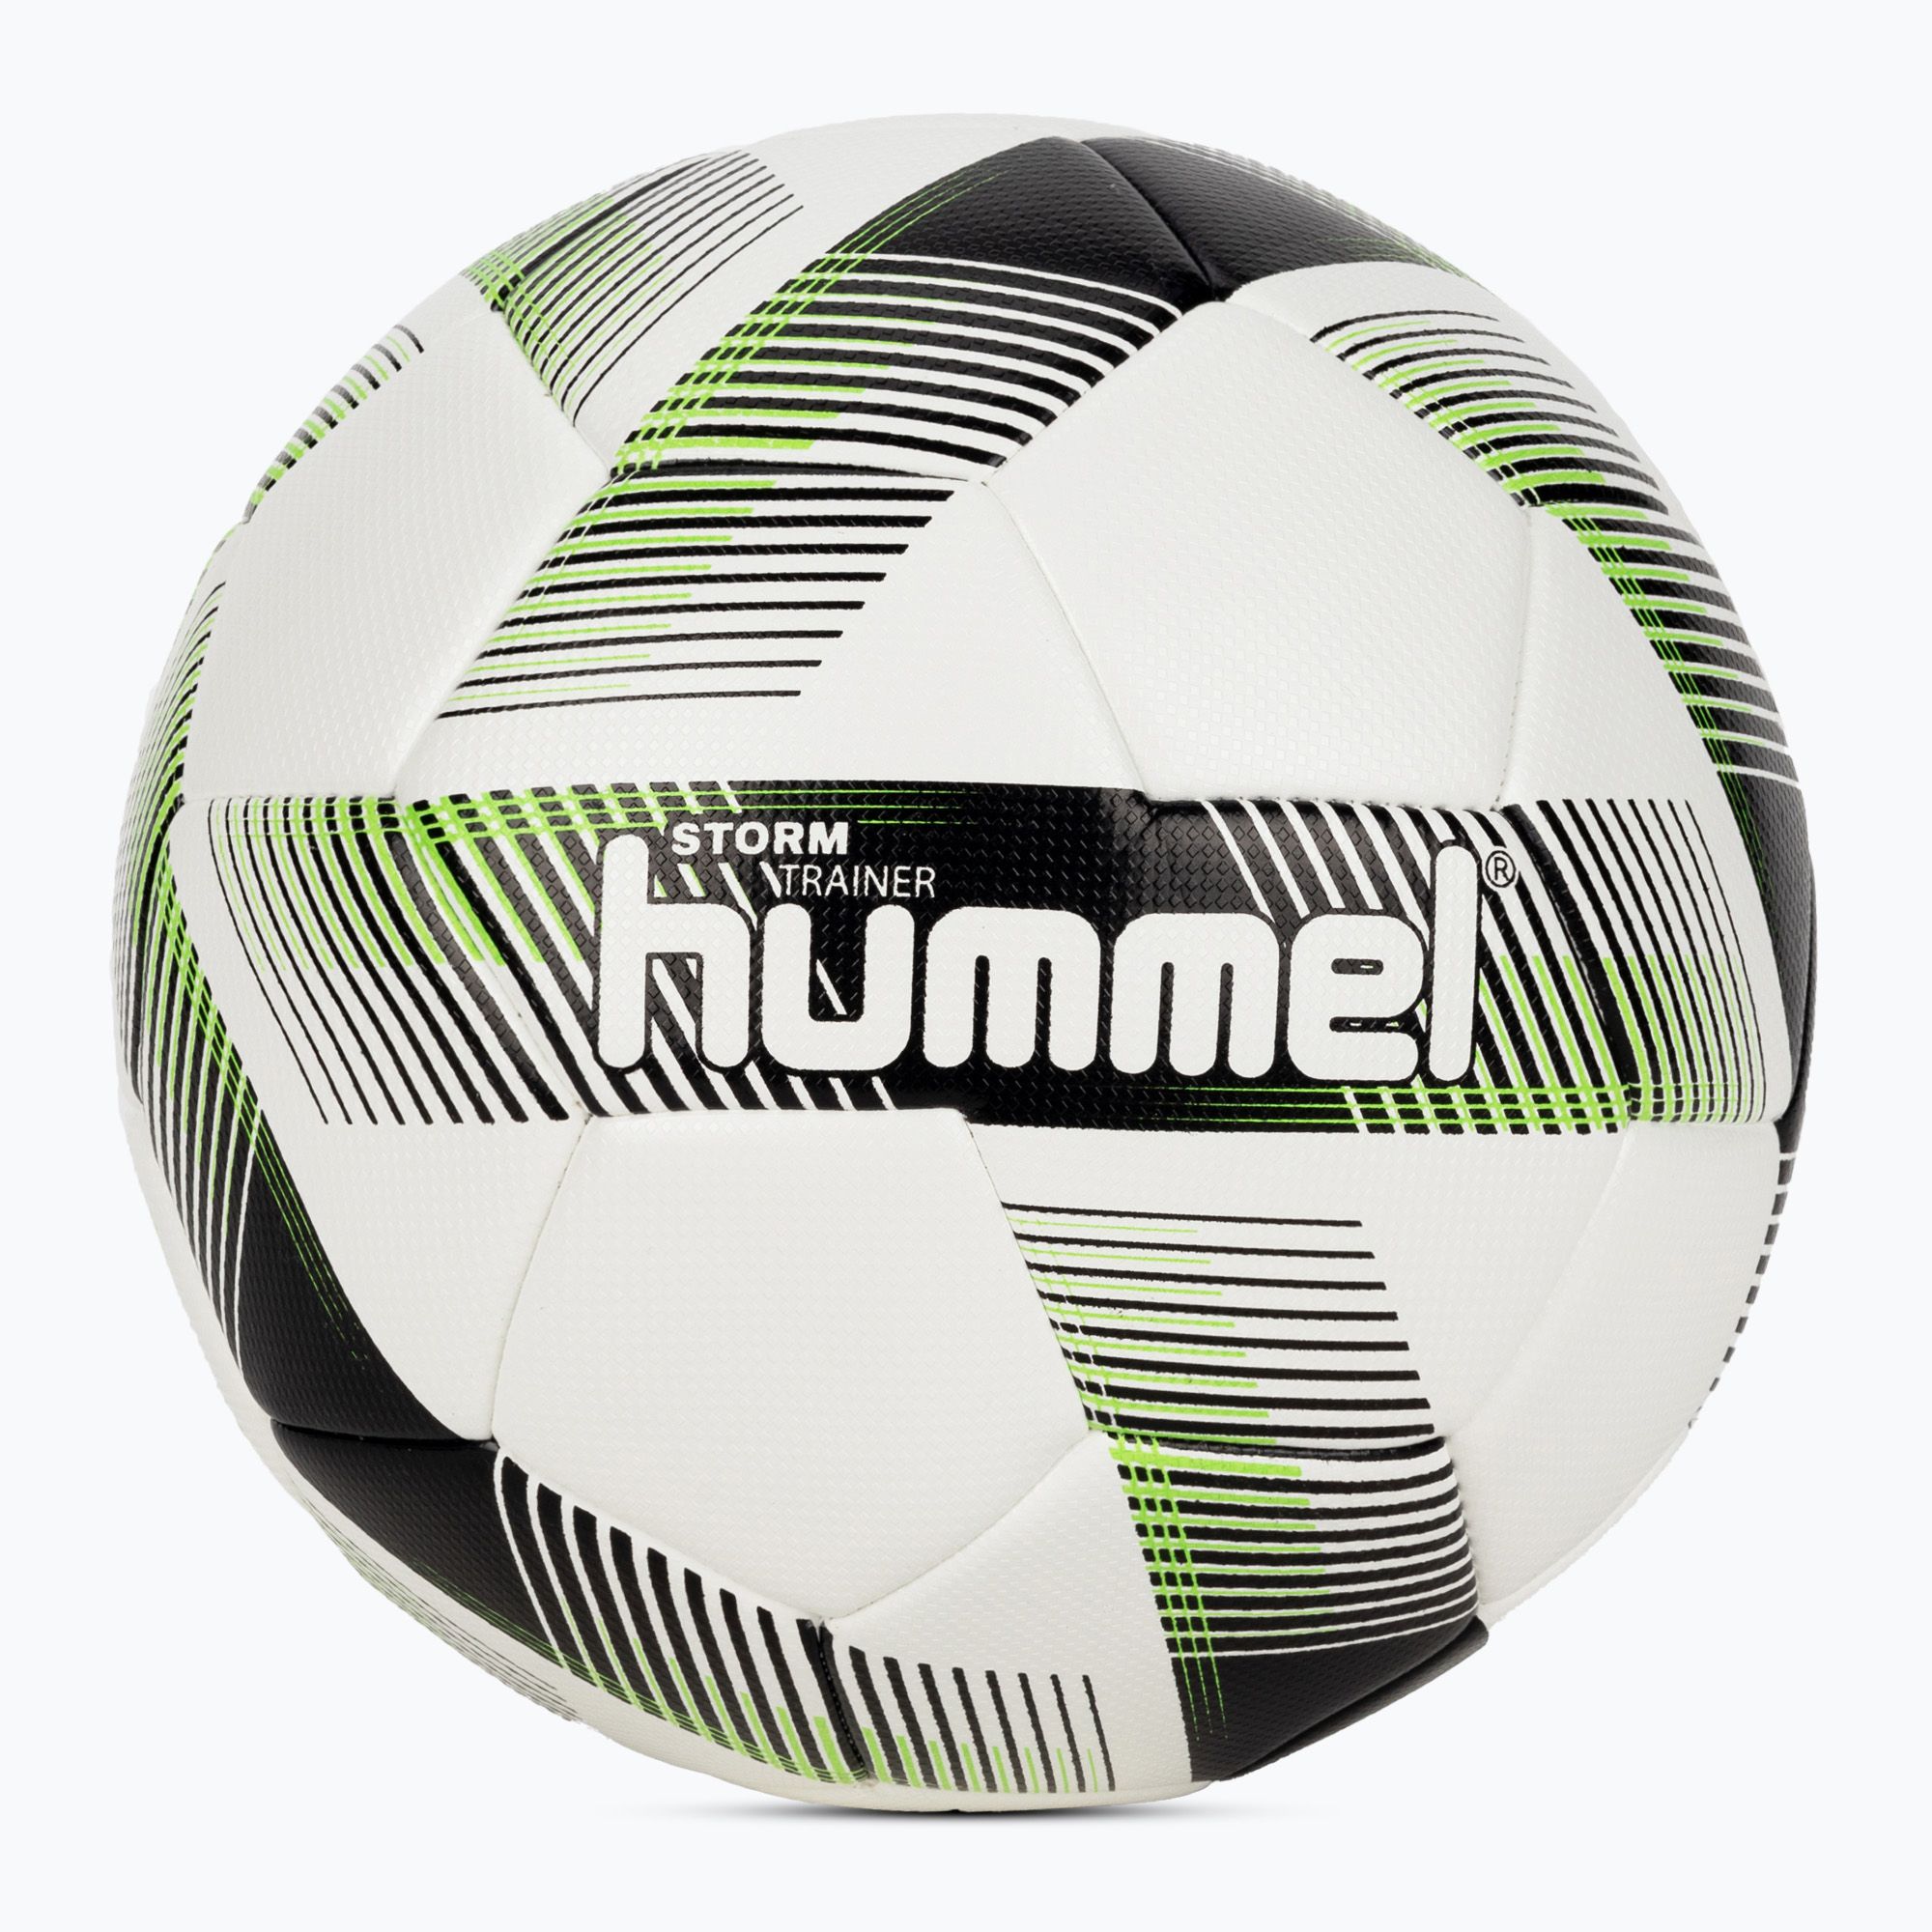 Piłka do piłki nożnej Hummel Storm Trainer FB white/black/green rozmiar 5